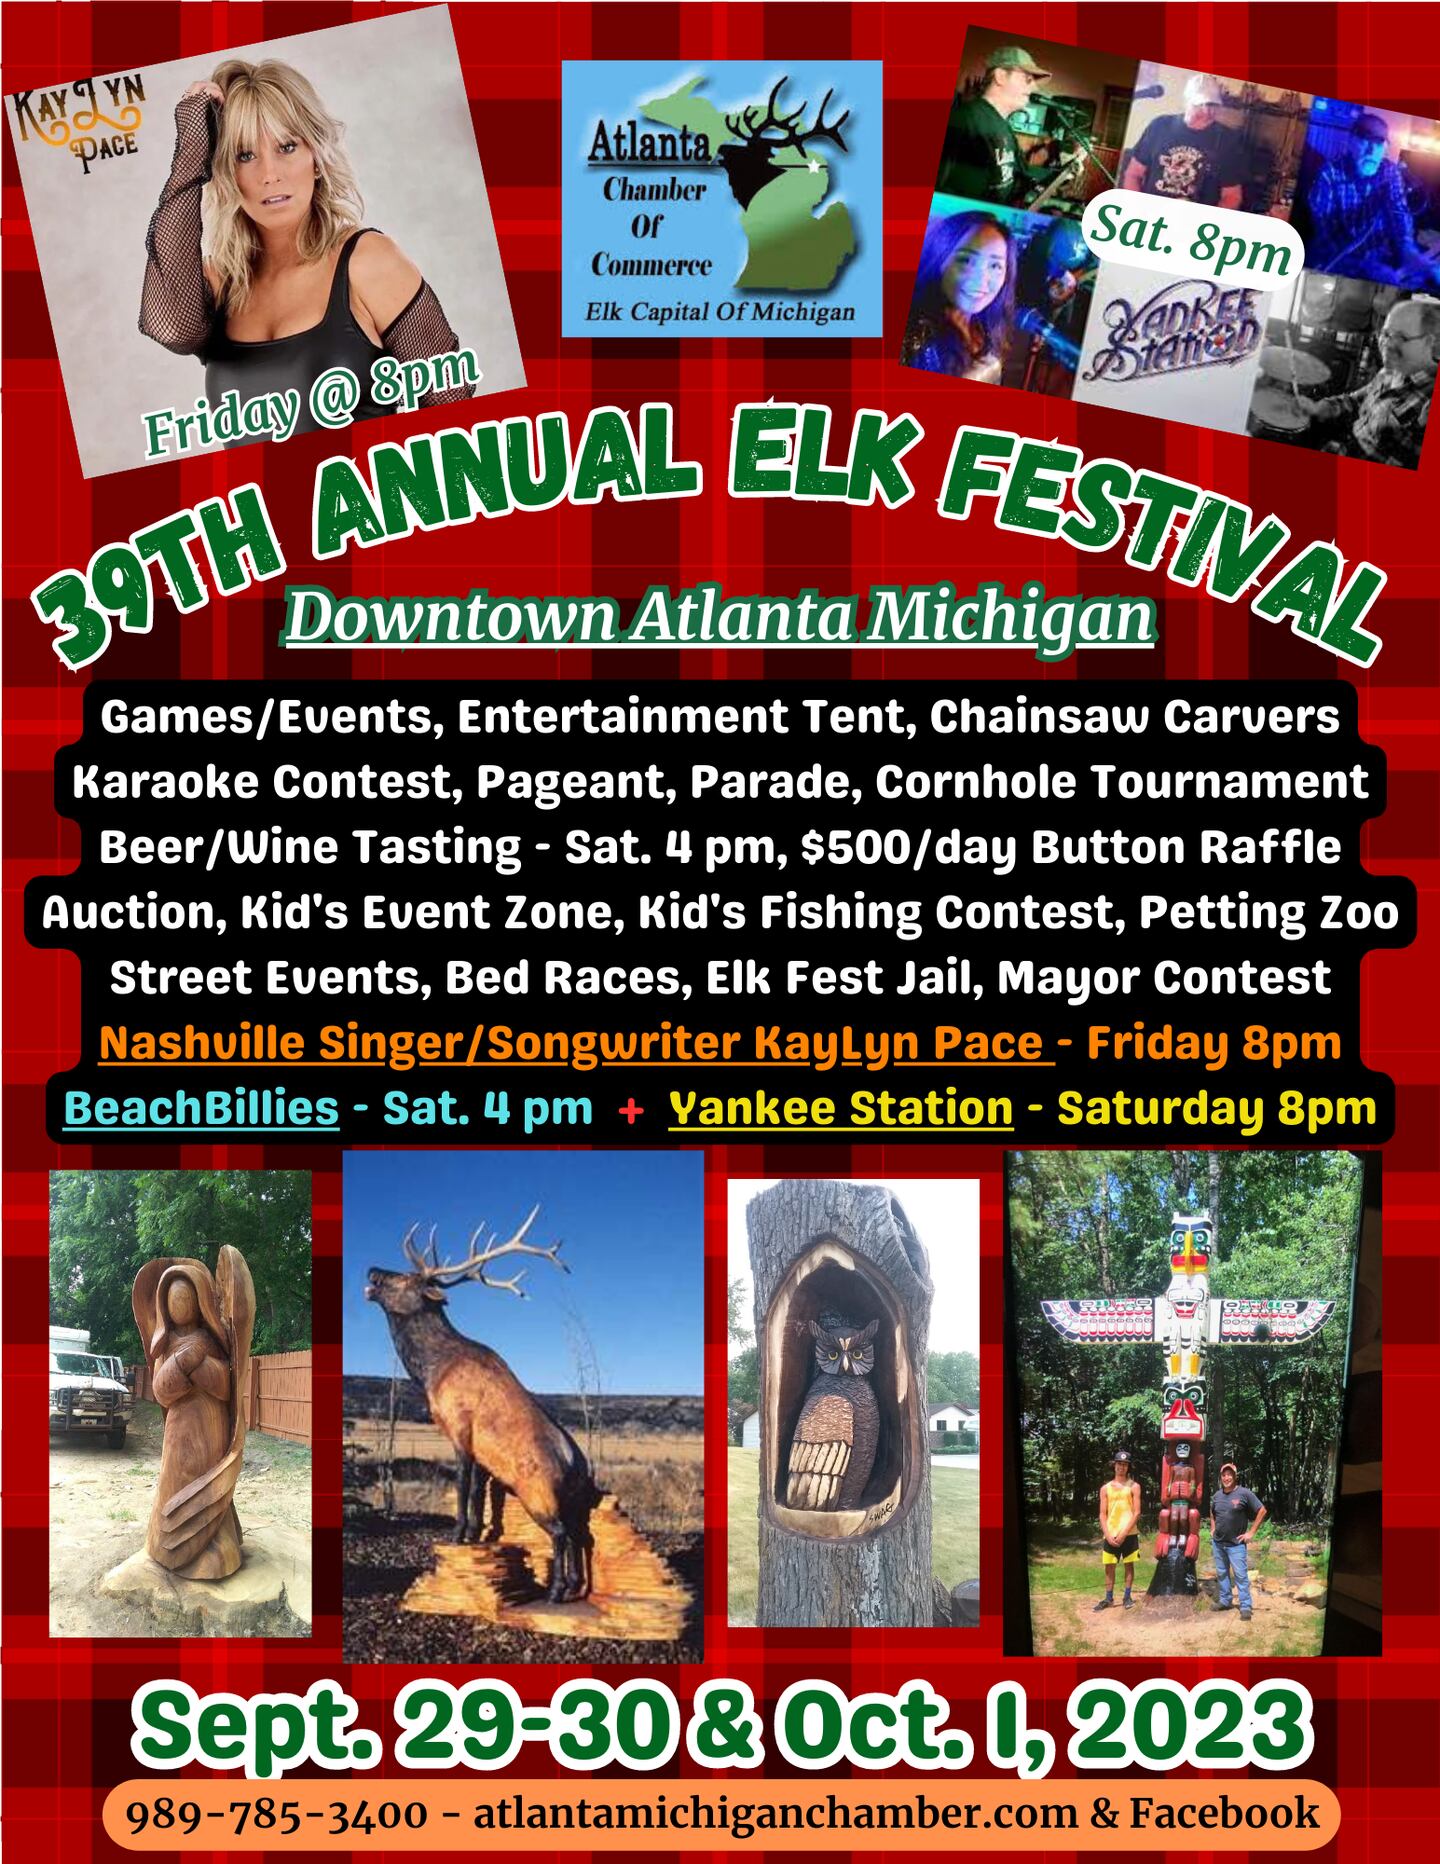 Atlanta Elk Festival returns in September for its 39th year 9&10 News